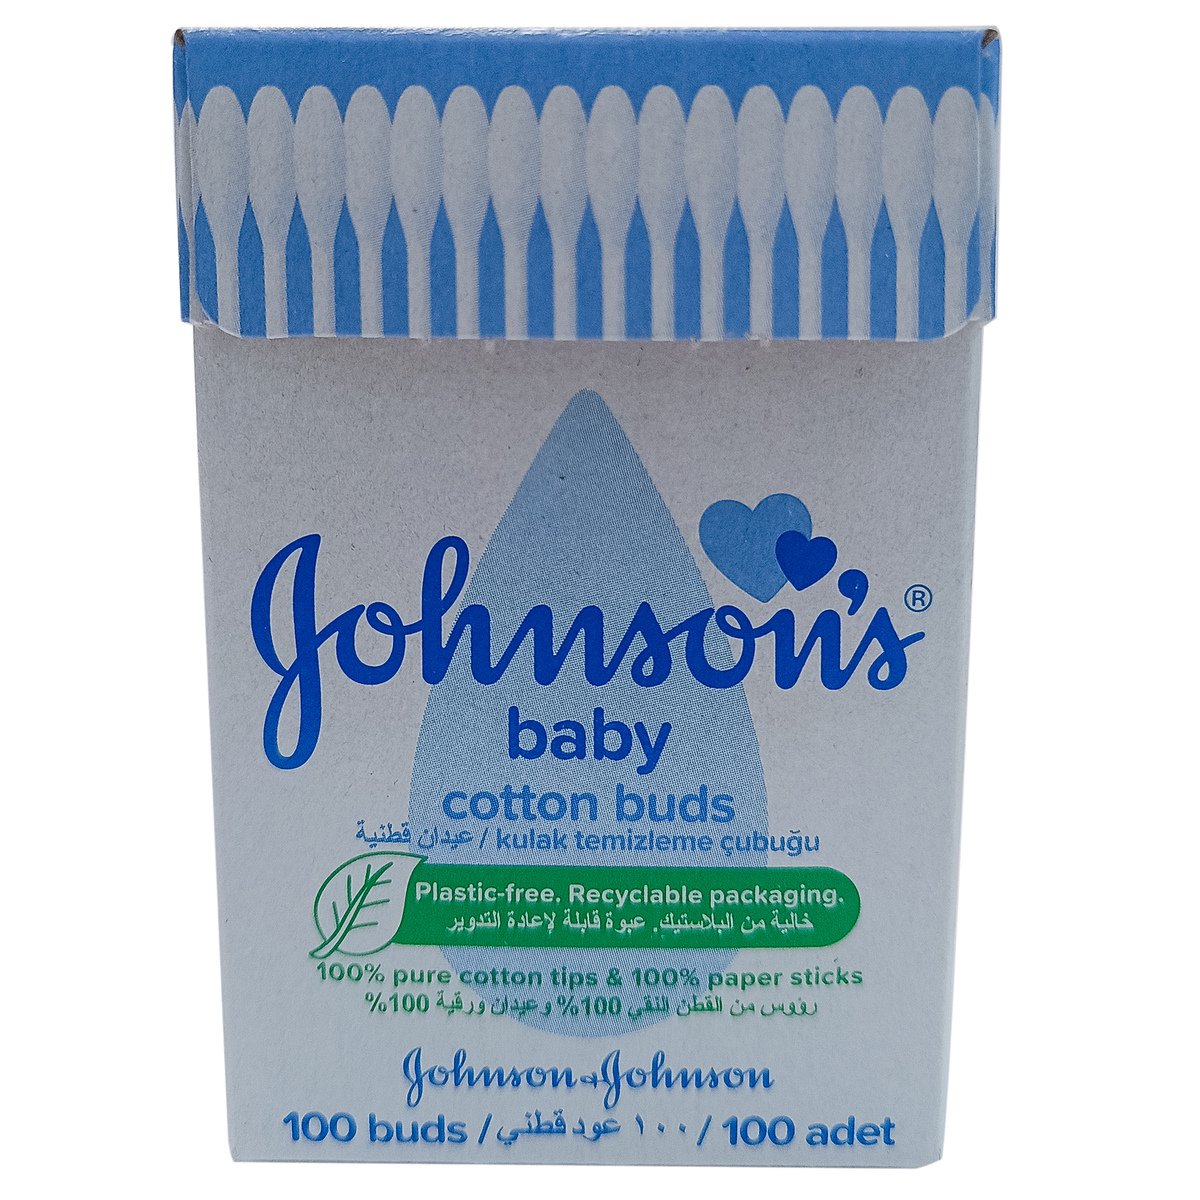 Johnsons Baby Cotton Buds 200 pcs + 100 pcs